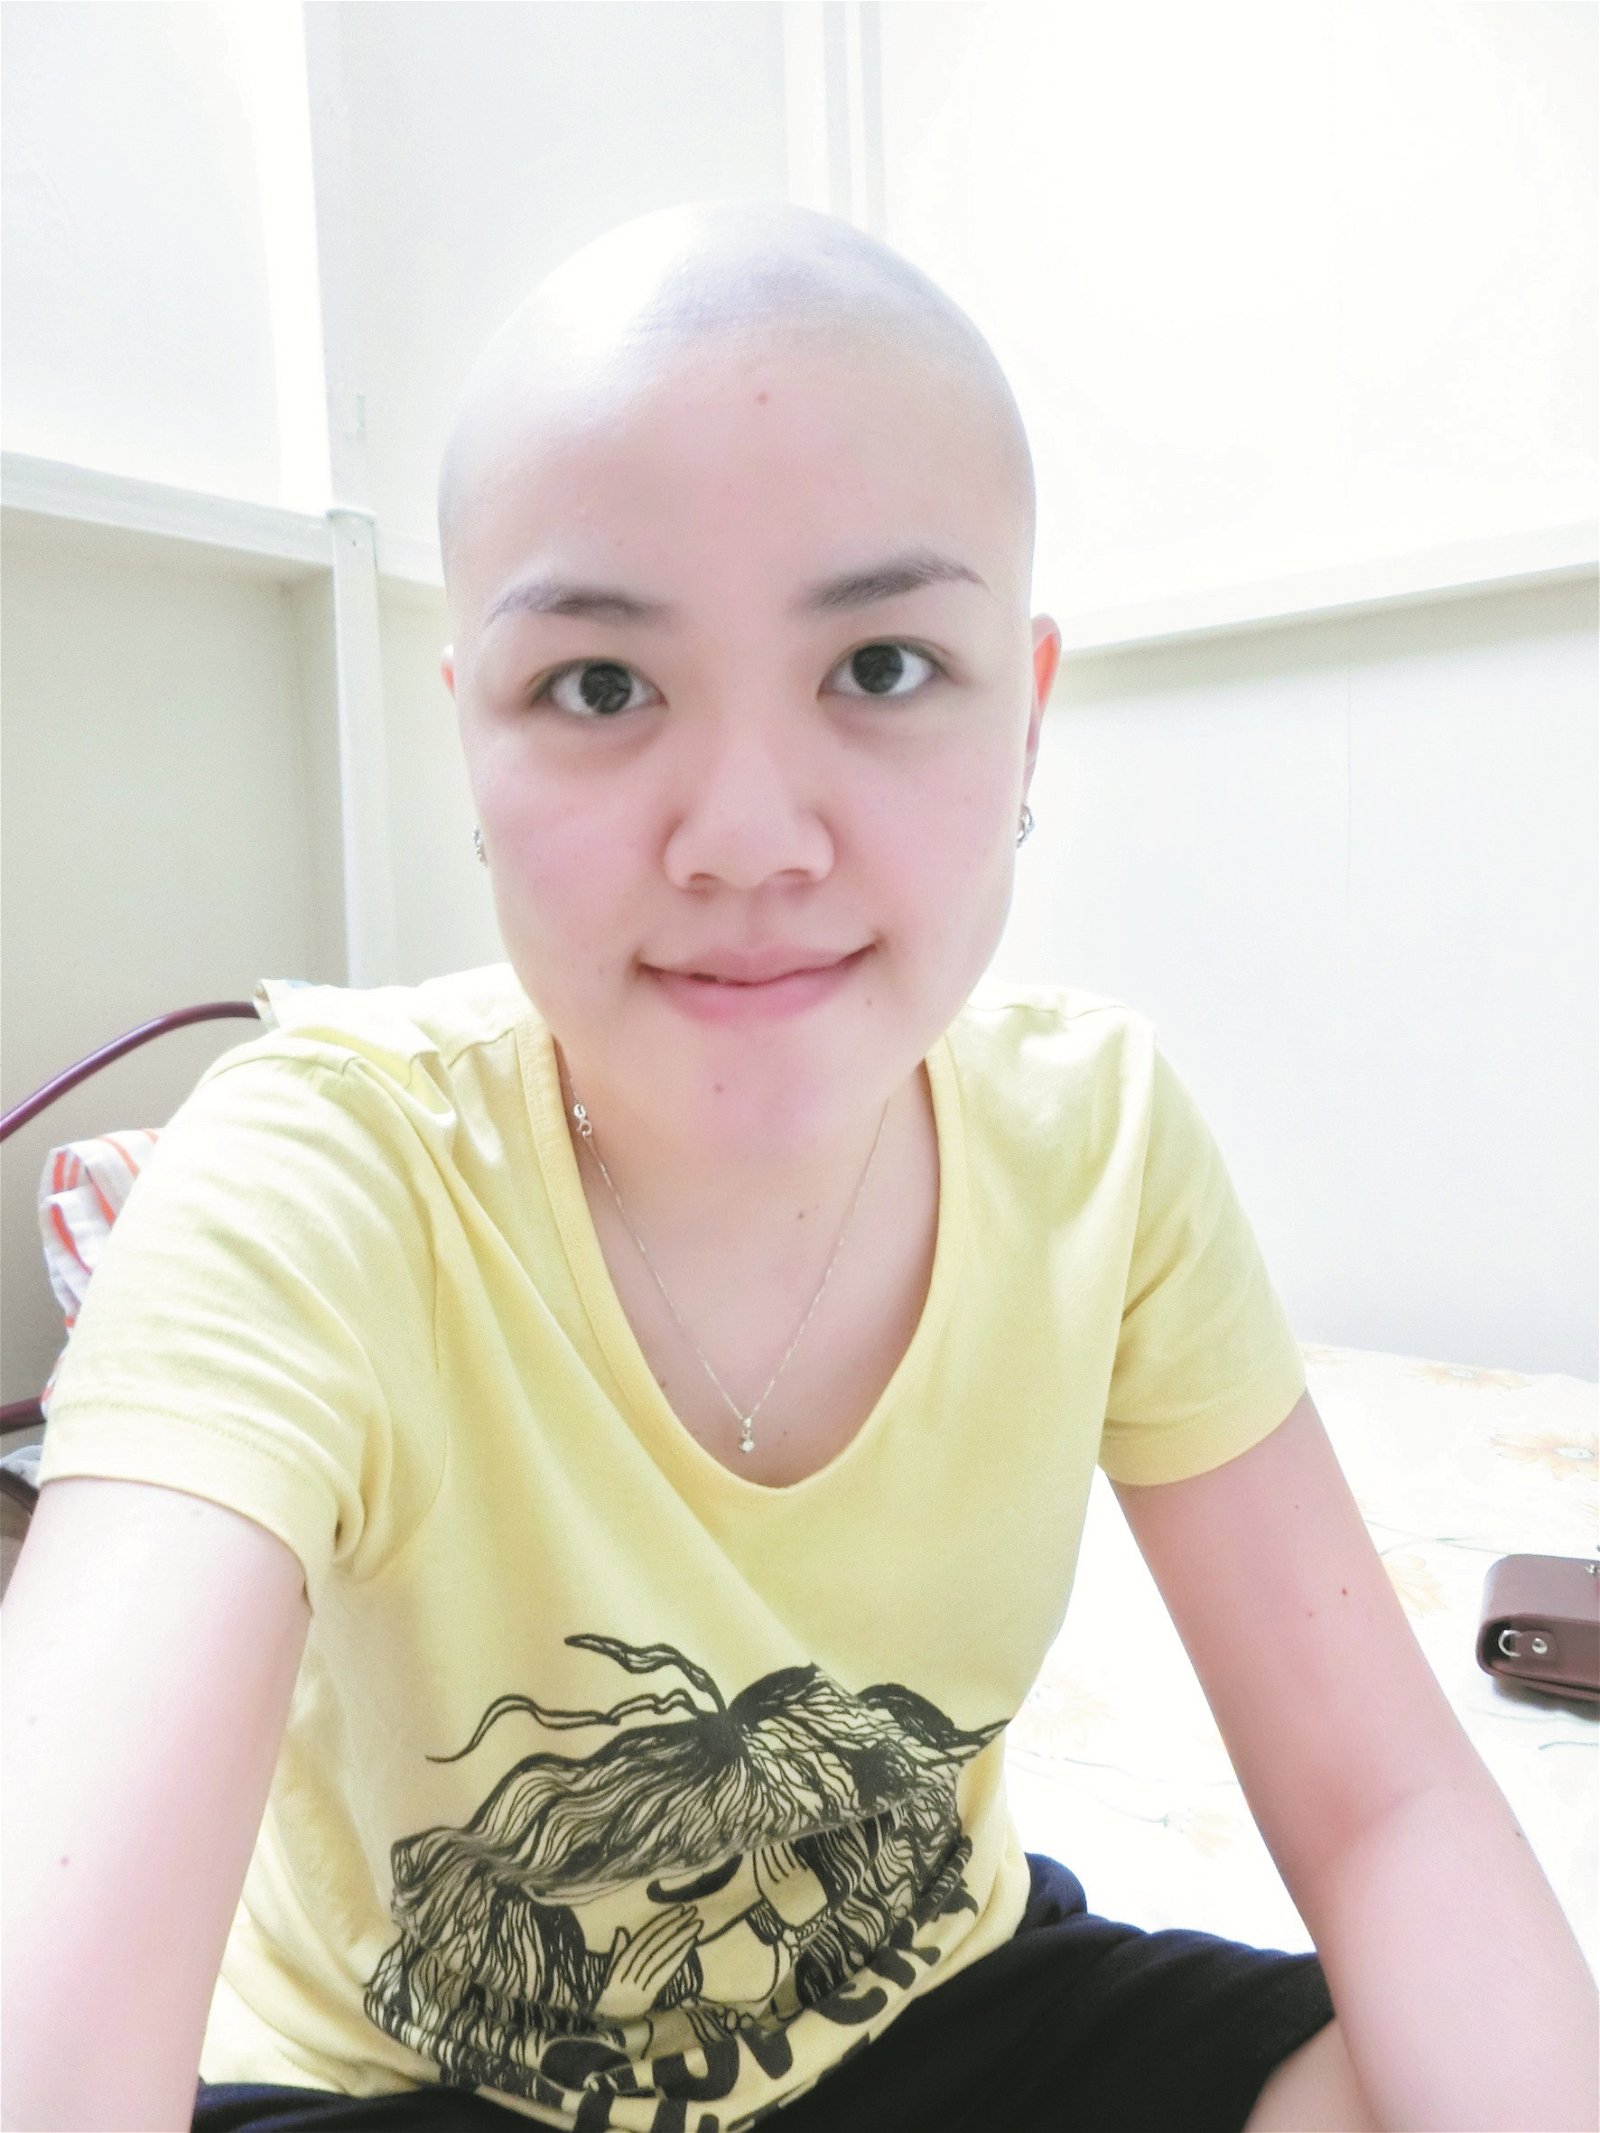 剃掉头发的徐紫恩依然美丽，她把自己光头的样子拍下，一方面当成日记，另一方面希望透过社交媒体分享自己的故事，能鼓励正在抗癌的病患。